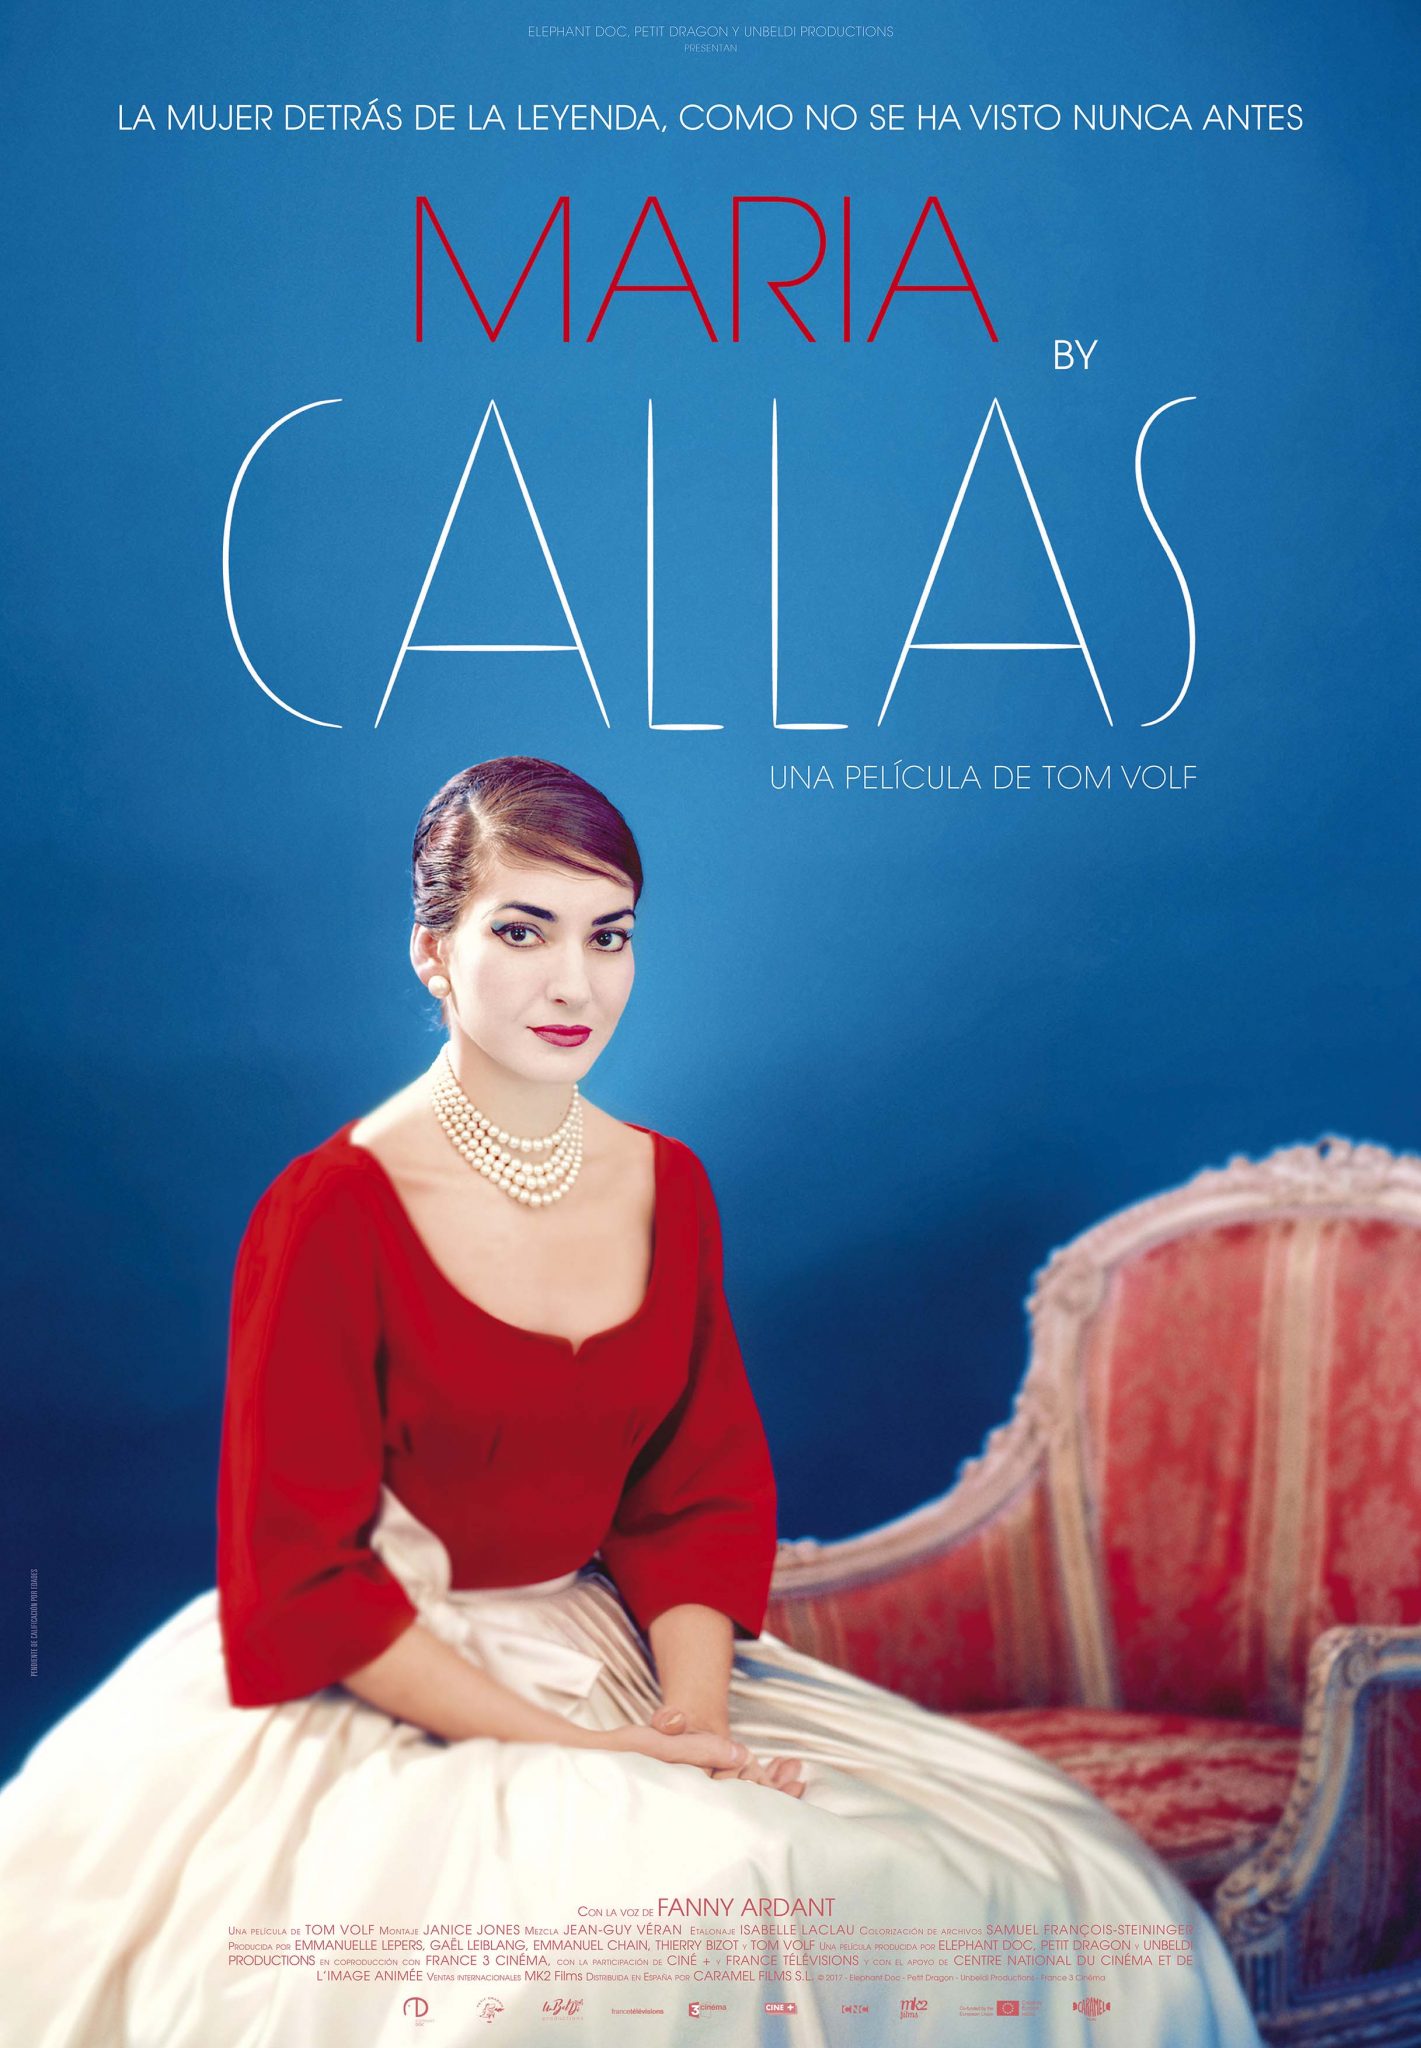 Tom Volf: "Esta película restablece la verdad sobre María Callas" en Madrid